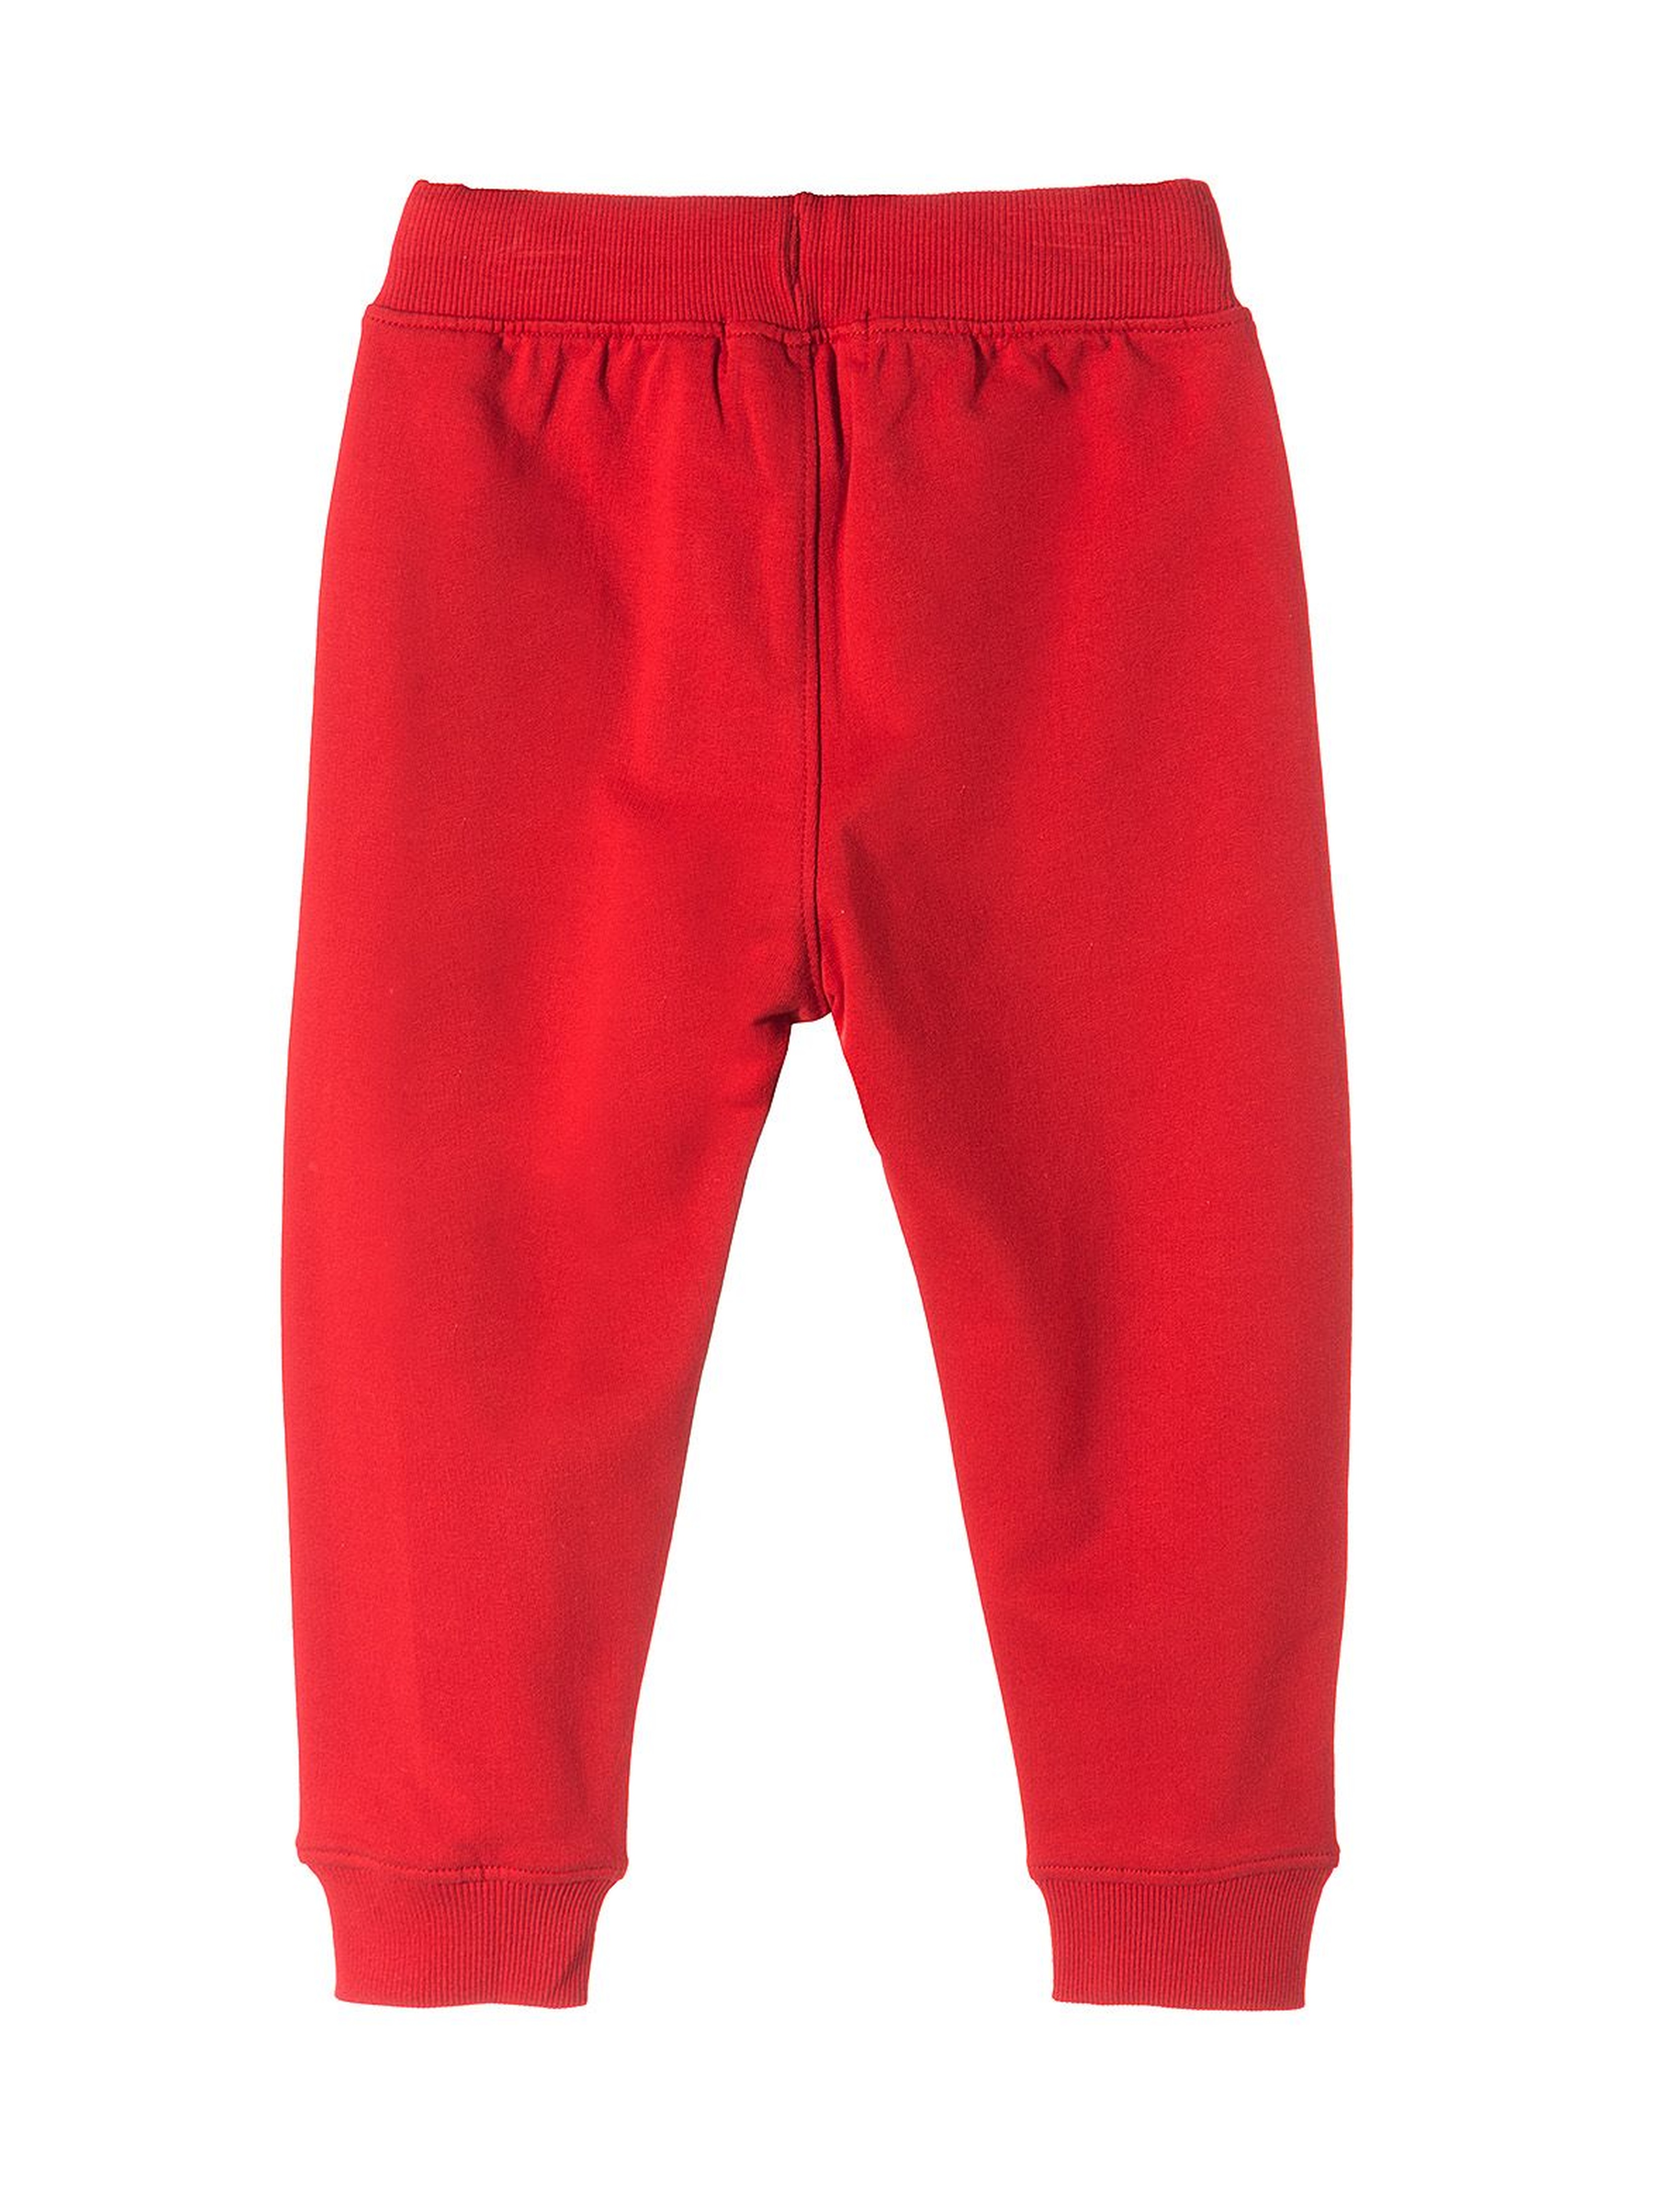 Spodnie dresowe dla chłopca- czerwone